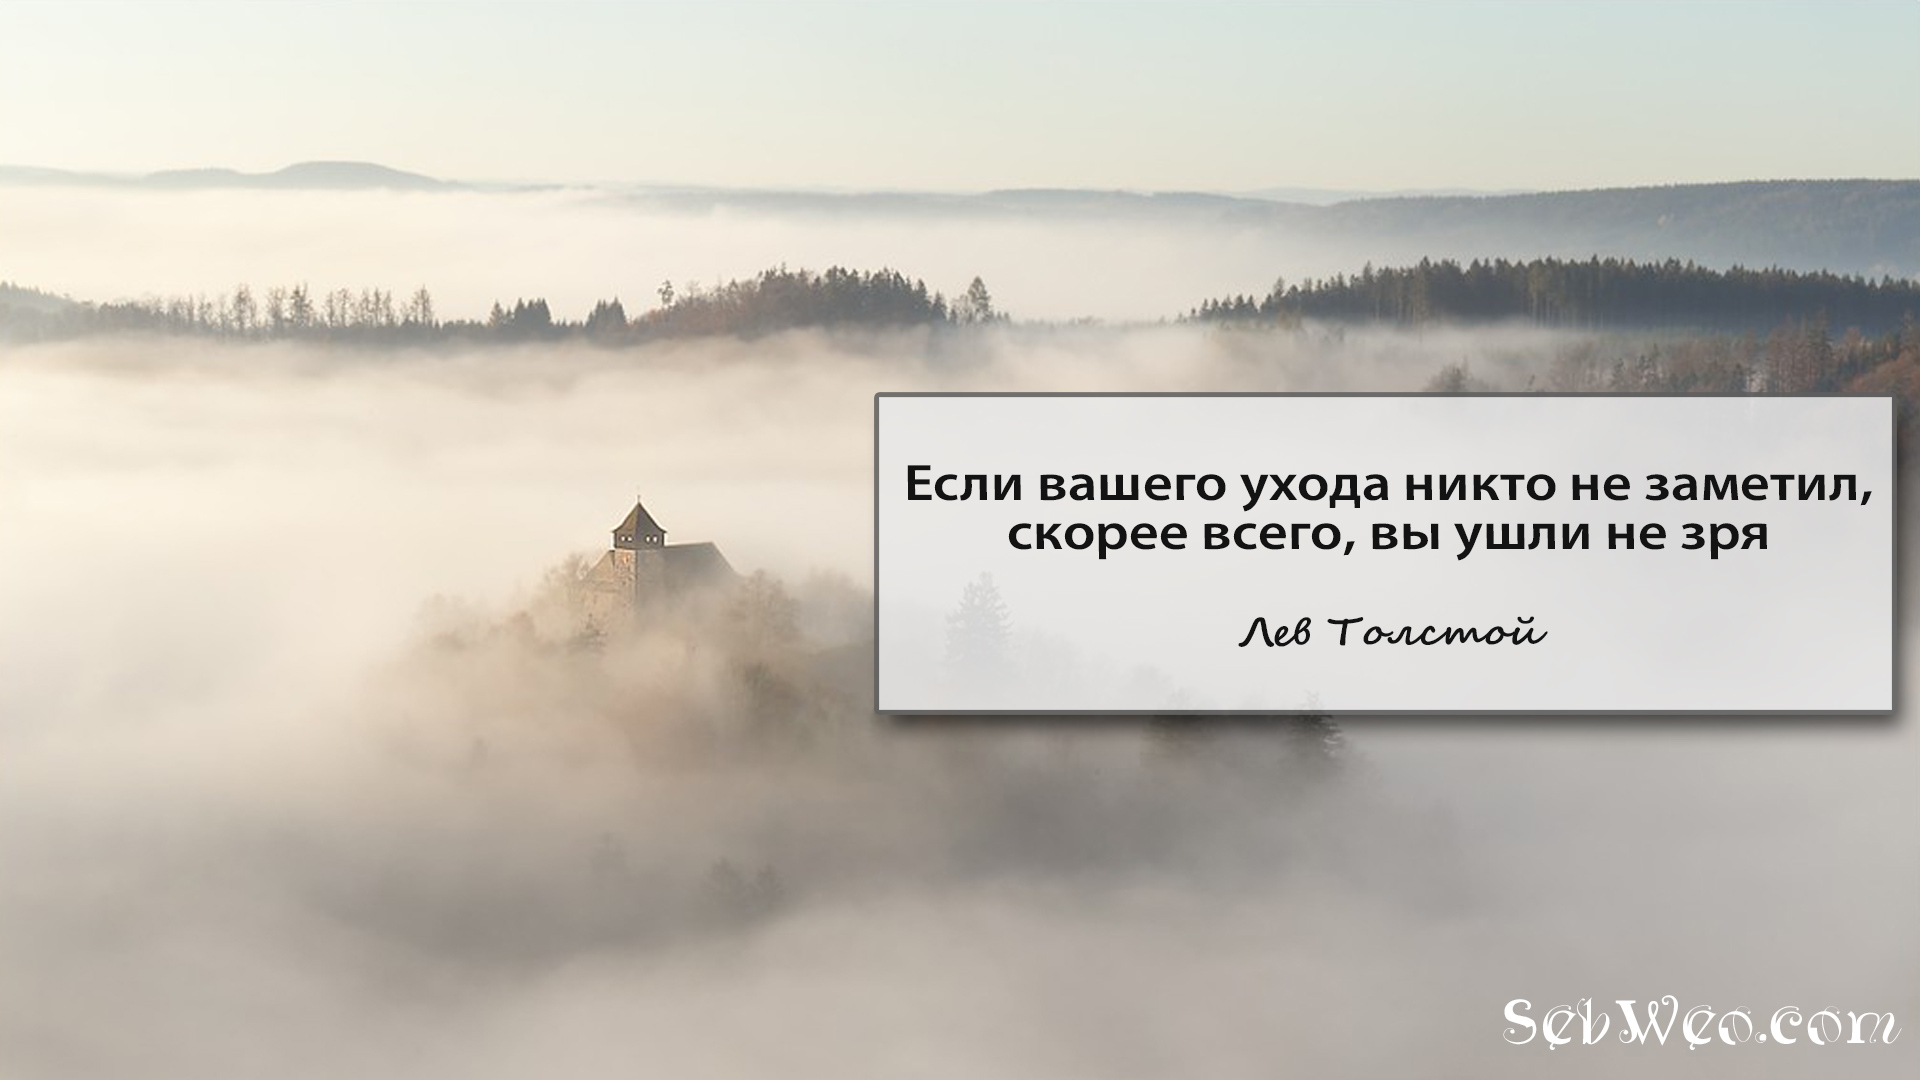 Если вашего ухода никто не заметил, скорее всего, вы ушли не зря -- Лев Толстой